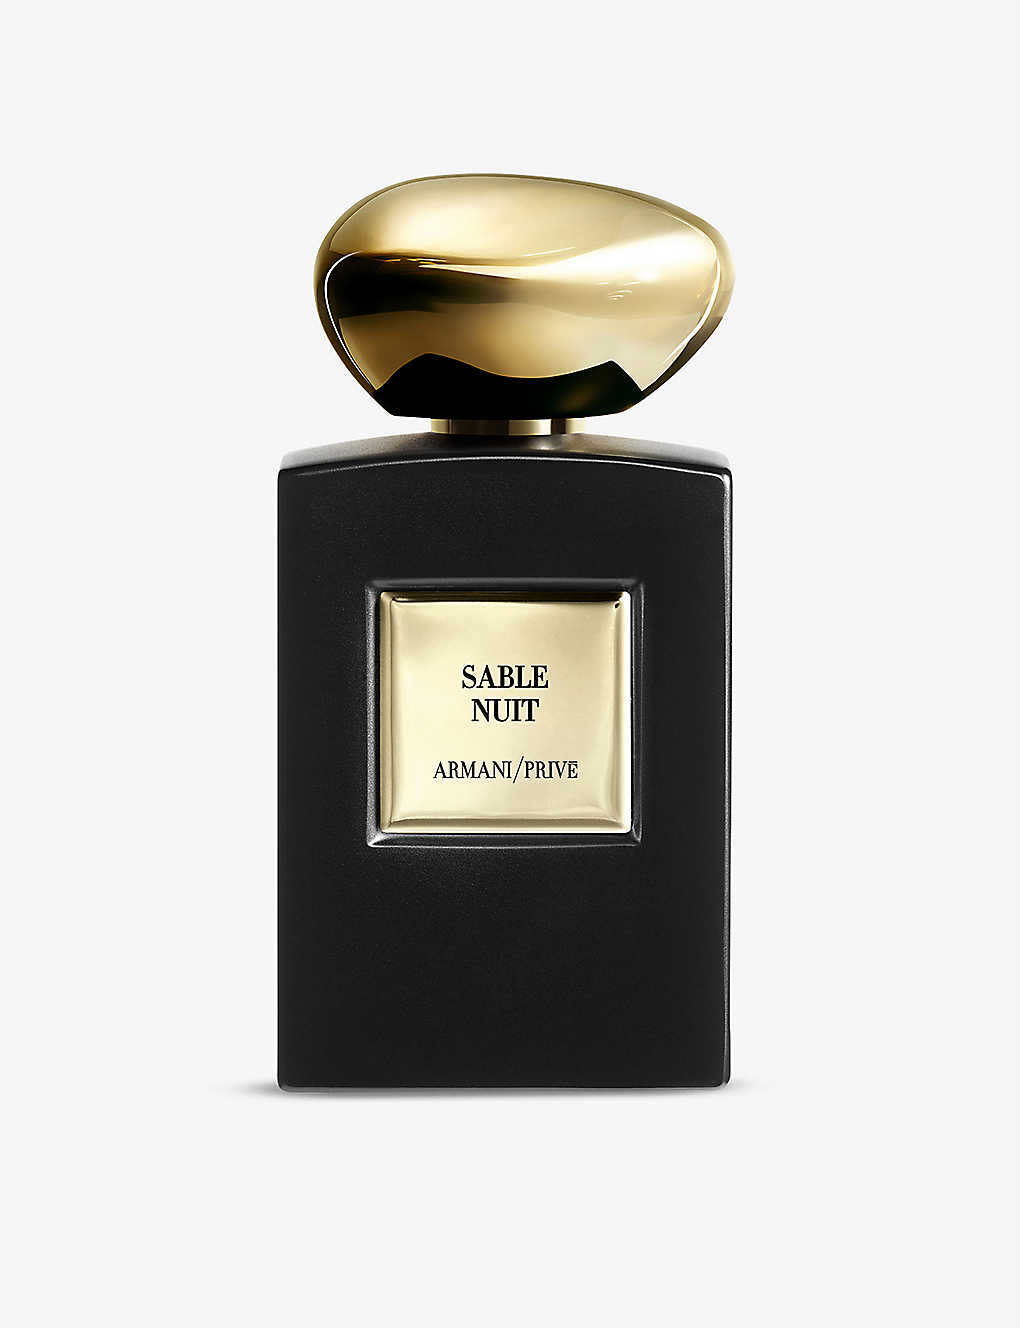 Giorgio Armani Privé Sable Nuit Eau De Parfum Intense